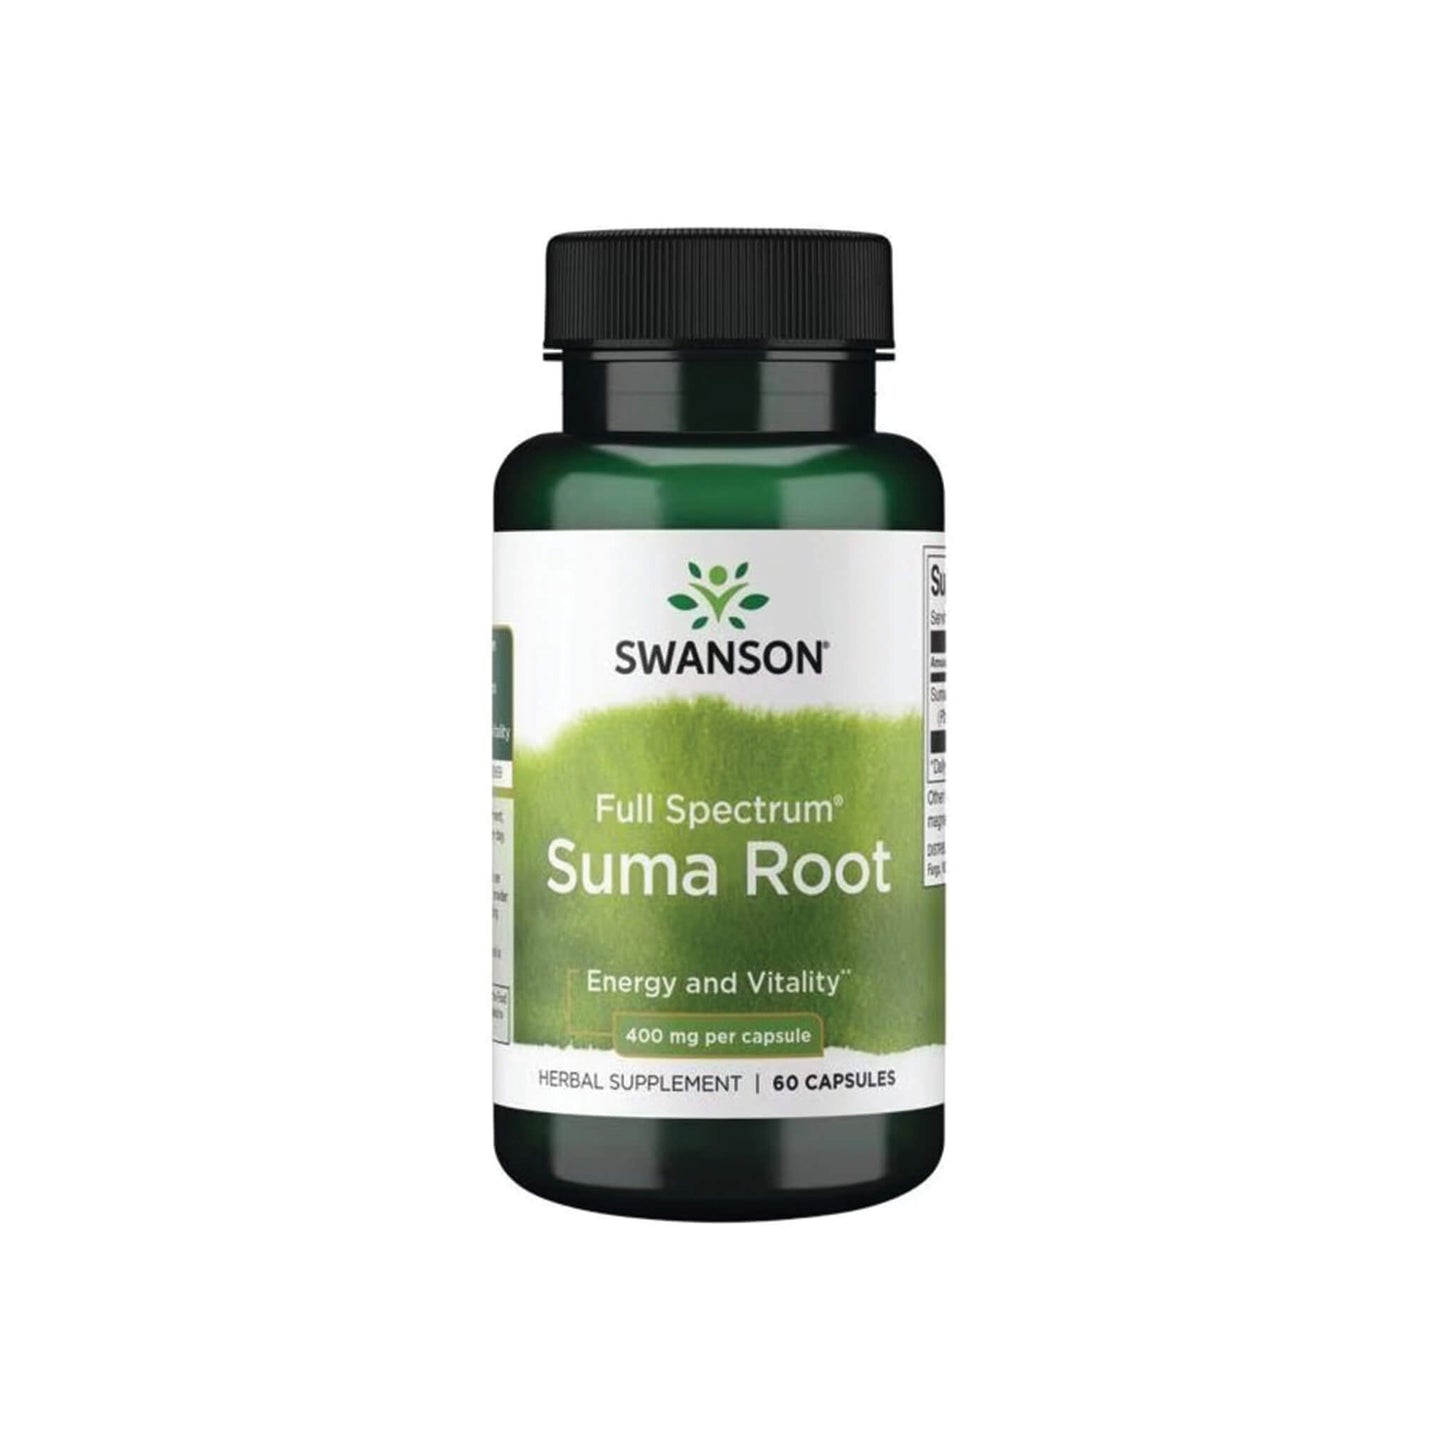 Swanson, Full Spectrum Suma Root, 400 mg - 60 Capsules